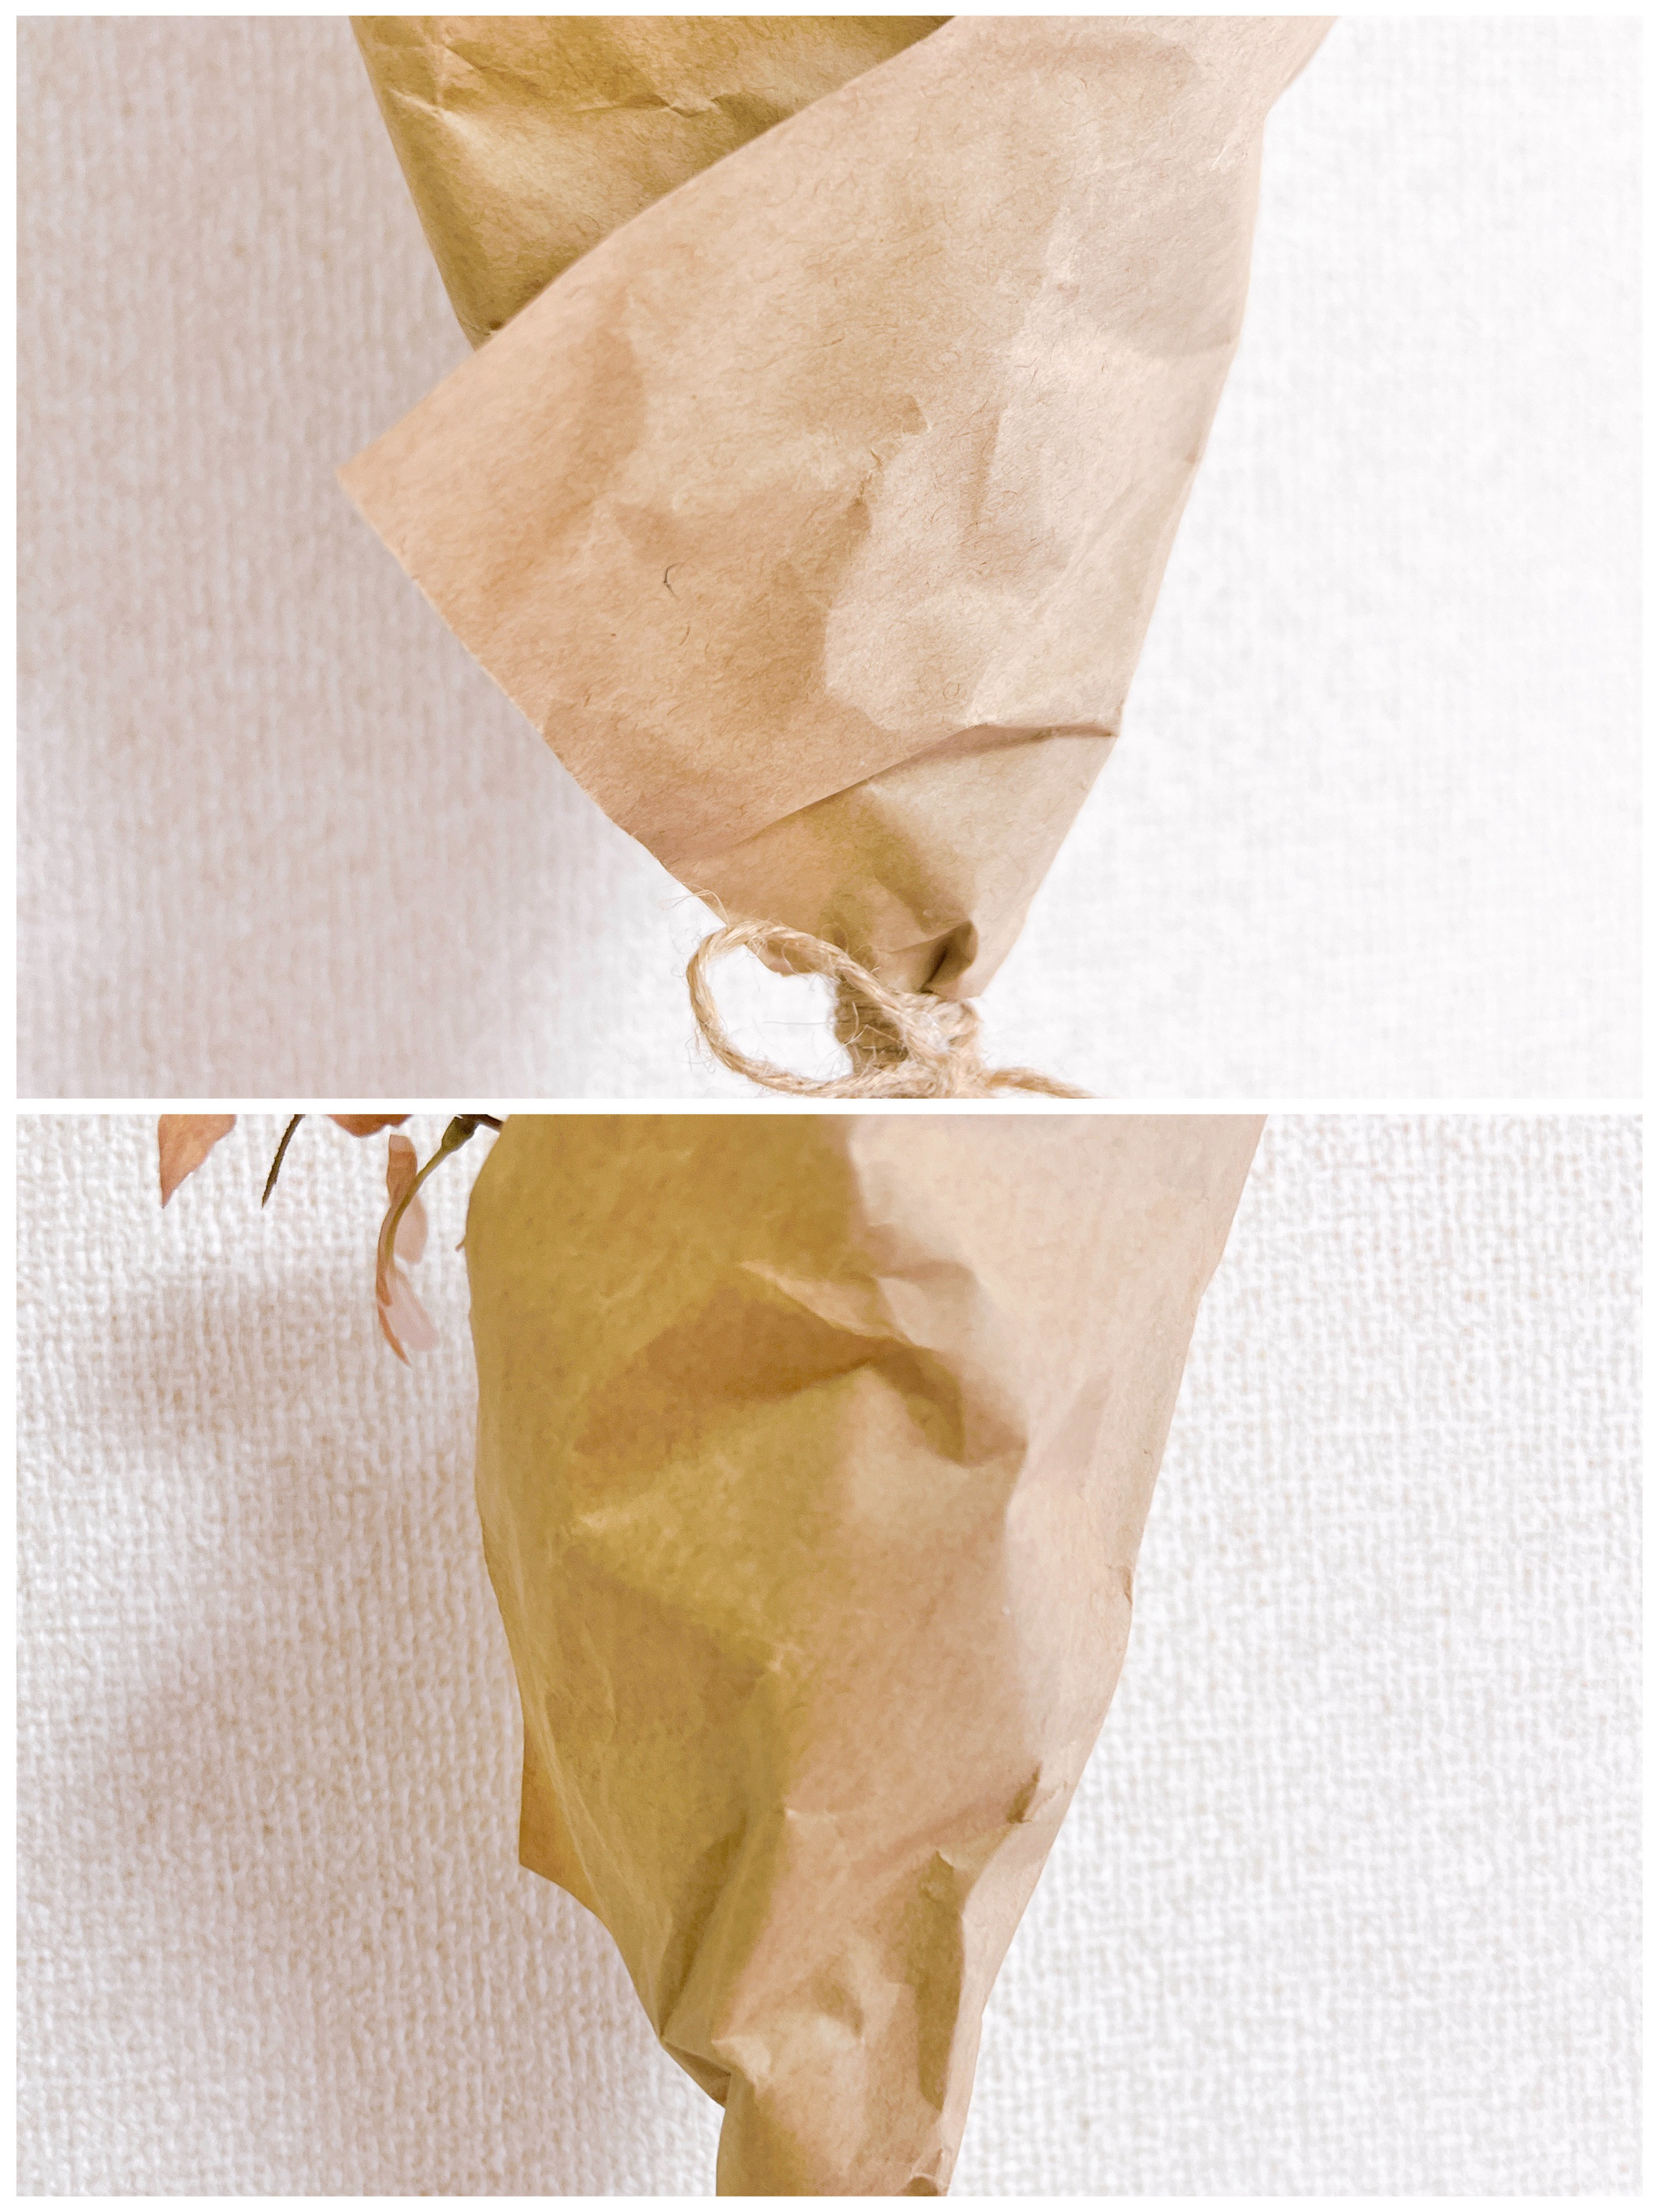 IKEA（イケア）のおすすめインテリア「SMYCKA スミッカ 造花のブーケ,ペールピンク/ベージュ,48cm」